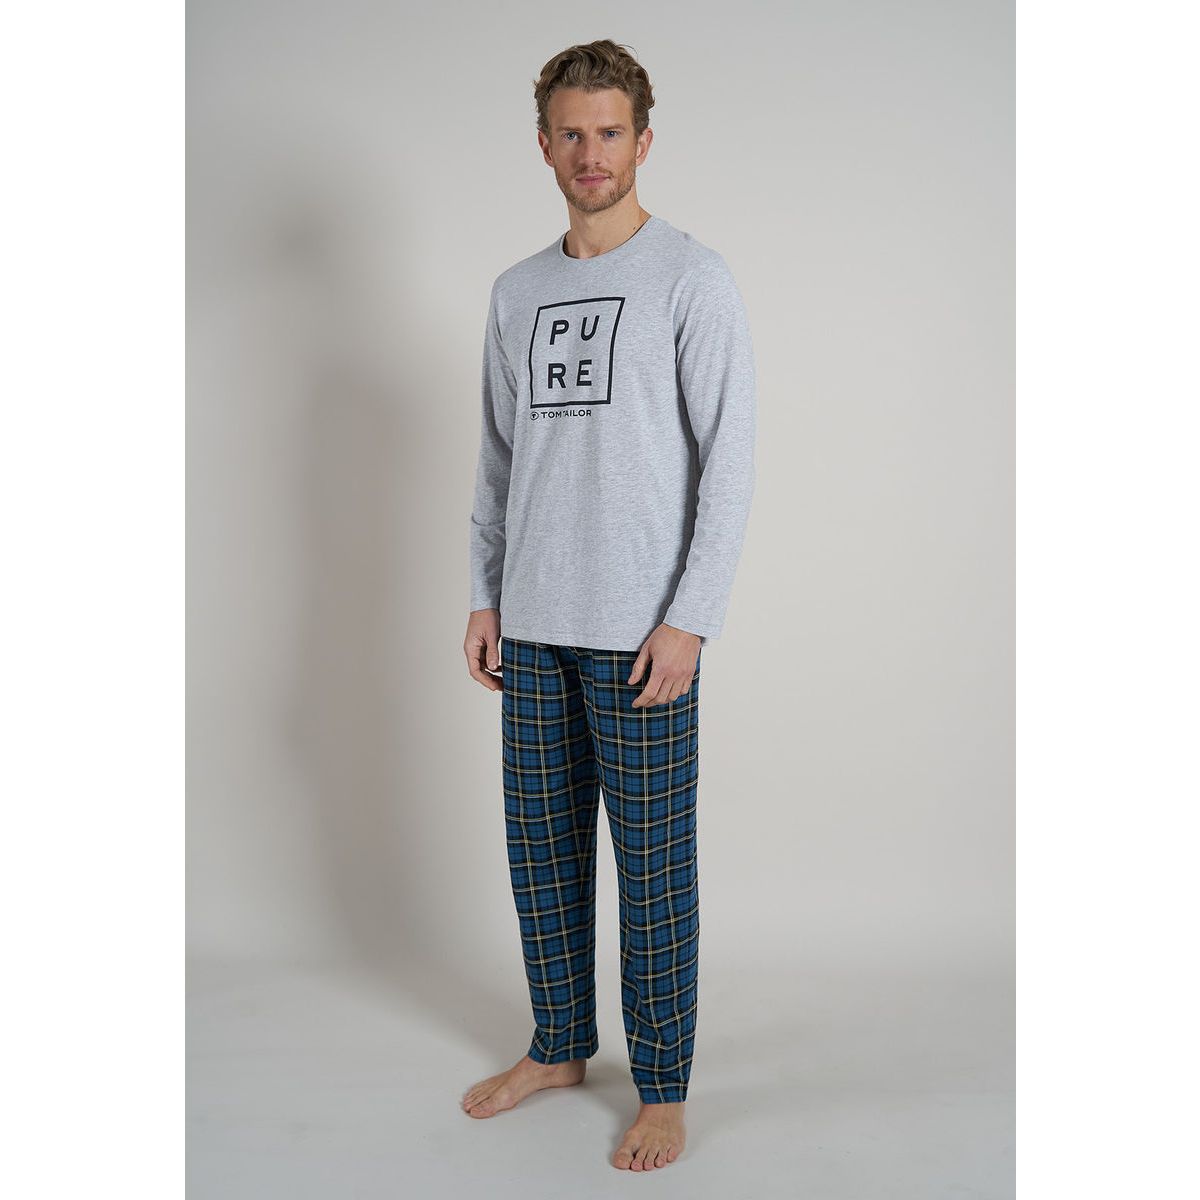 Tom Tailor heren | | pyjama\'s, en 40,- huis Online vanaf retour meer Snel Pure Gratis | in € verzending pyjama mooiste nachthemden, | de ondermode Gratis